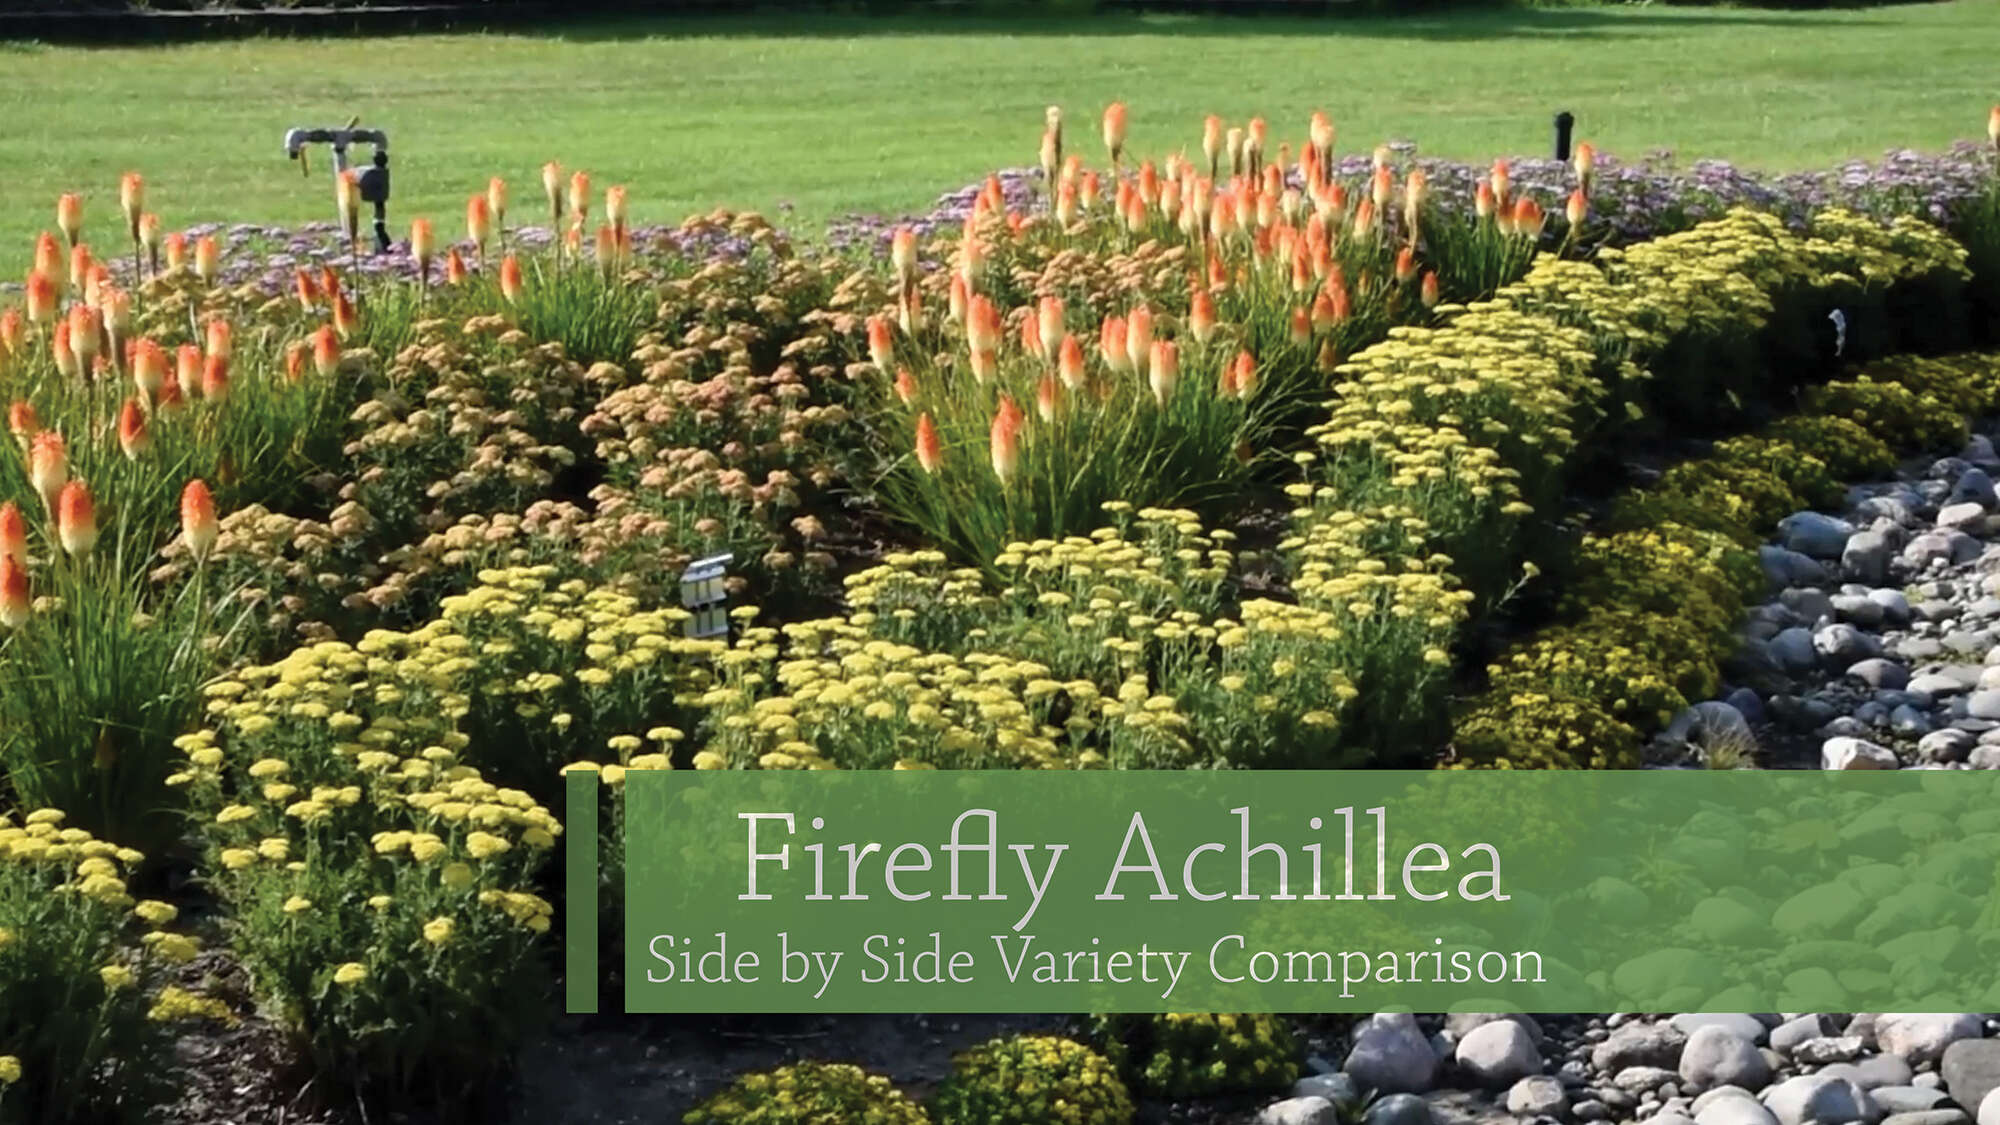 Firefly Achillea Comparison